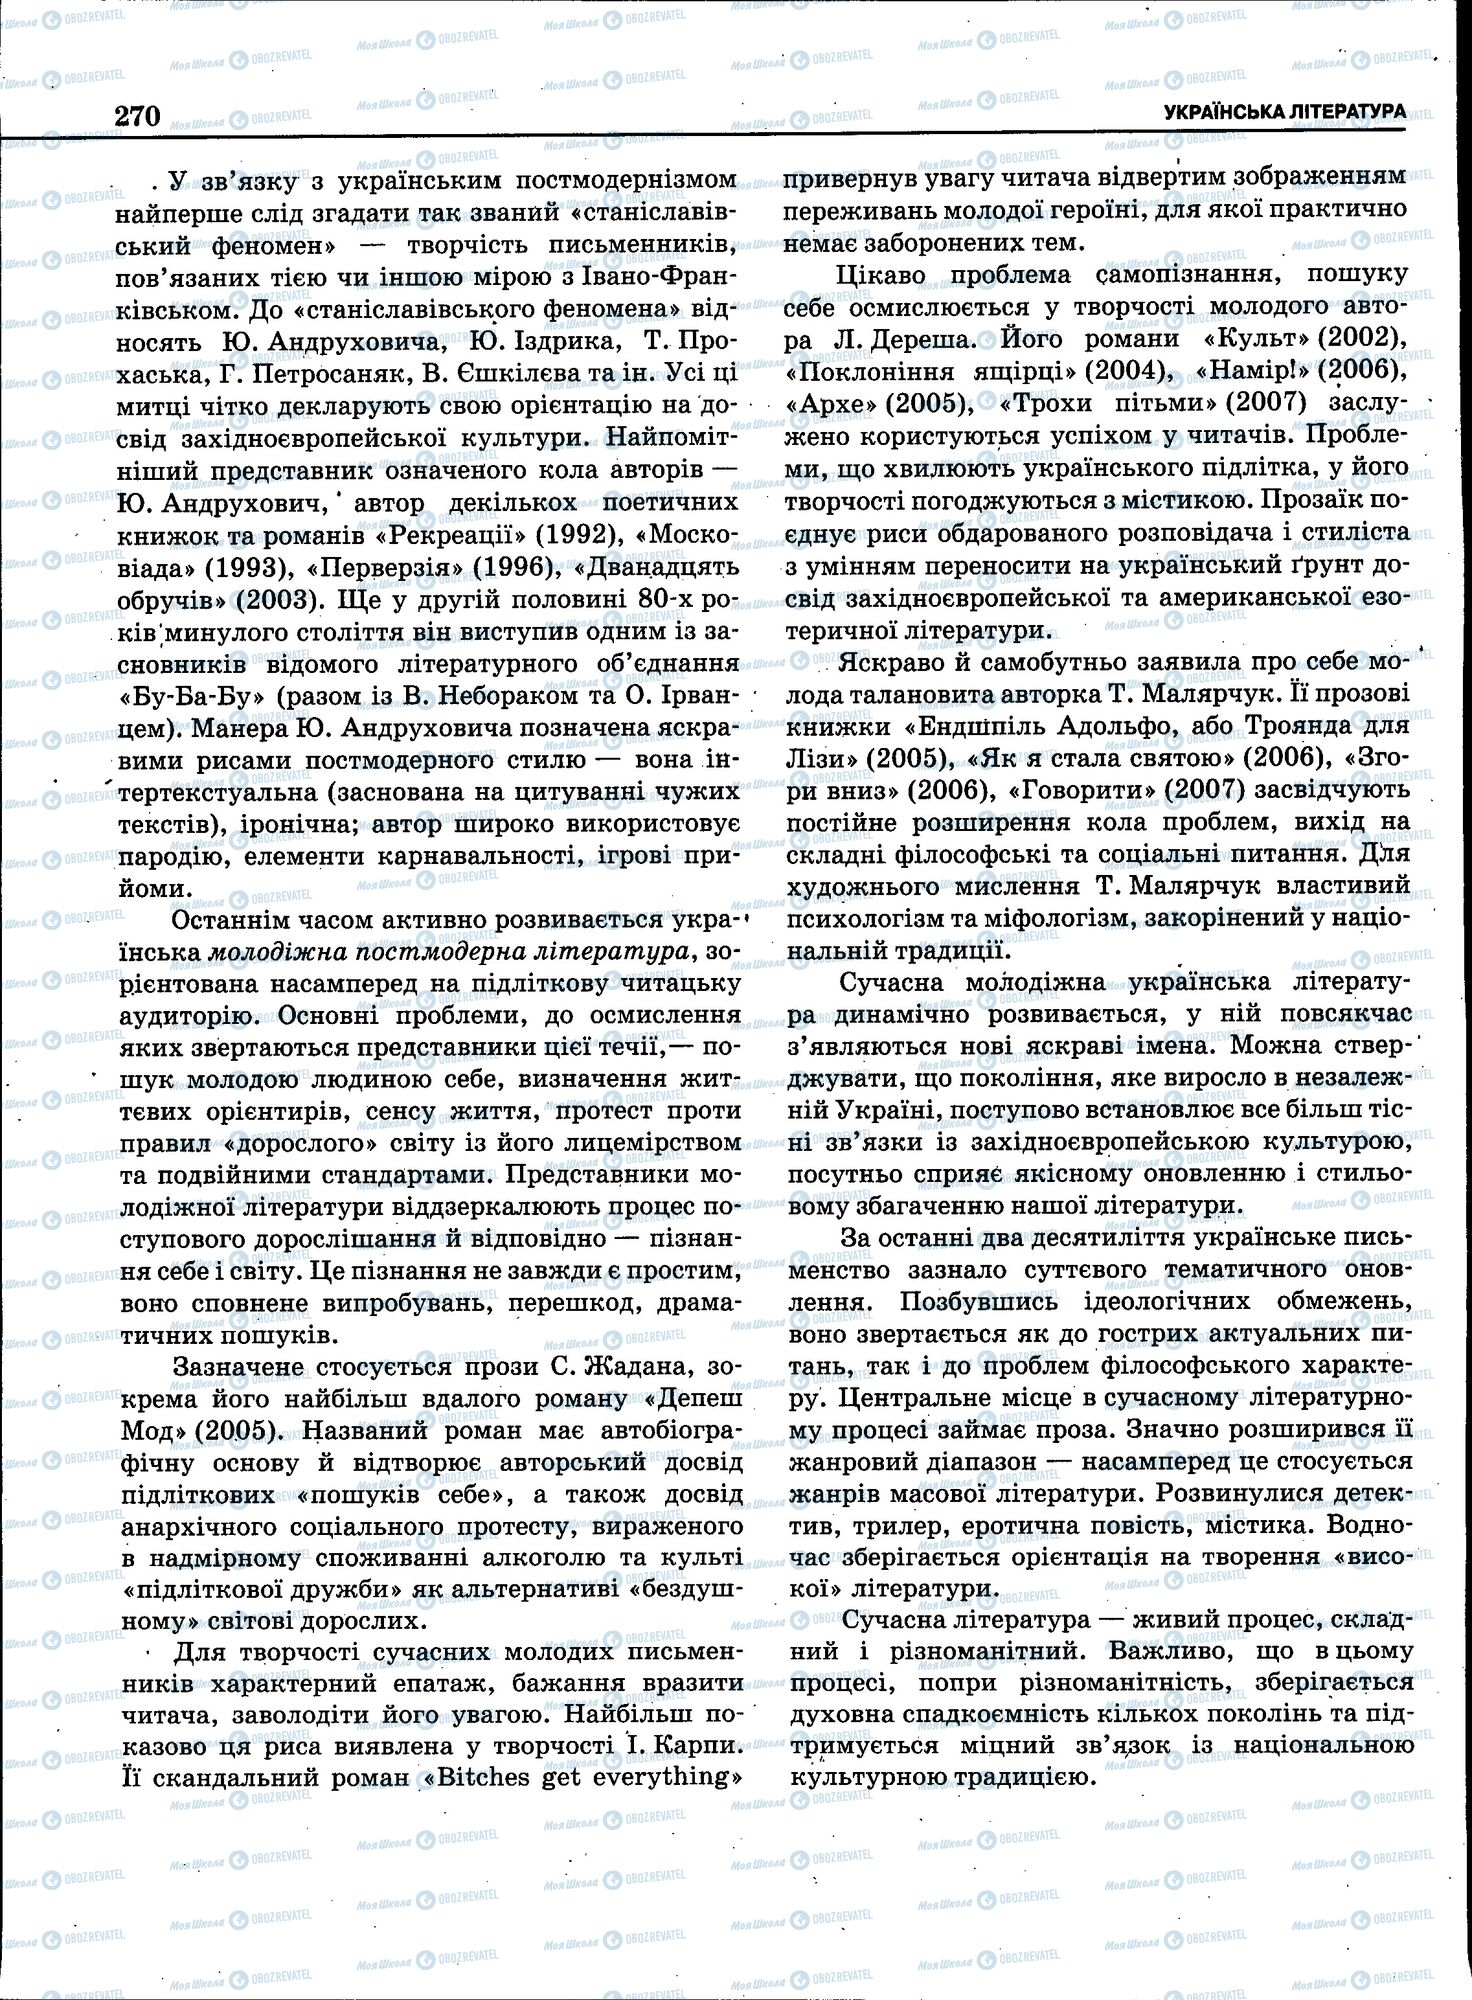 ЗНО Укр мова 11 класс страница 268